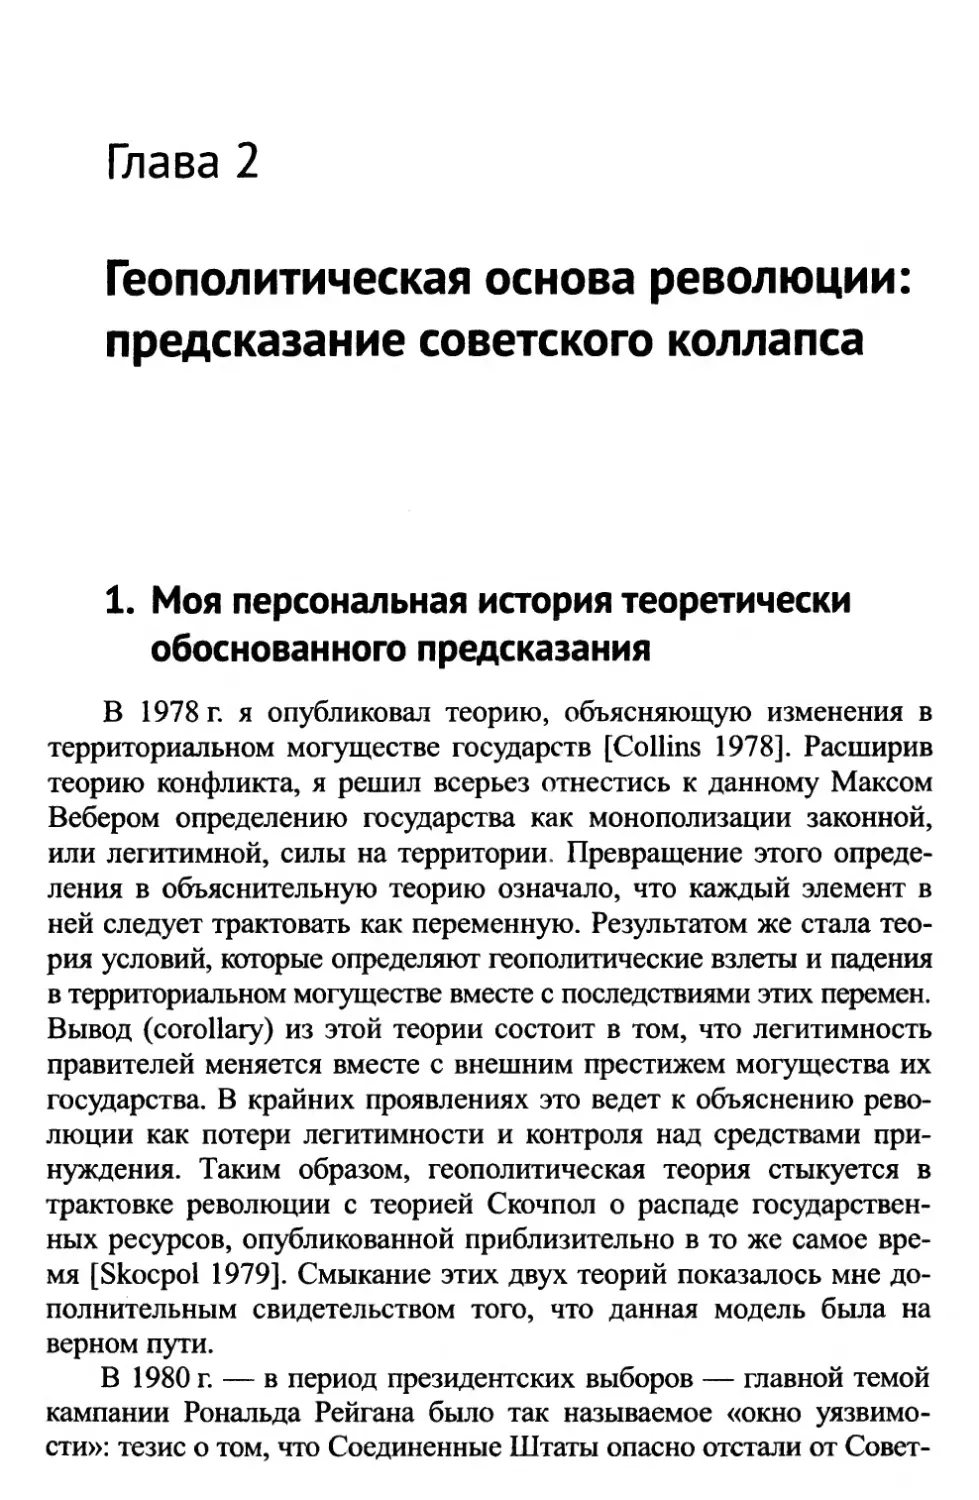 Глава 2. Геополитическая основа революции: предсказание советского коллапса